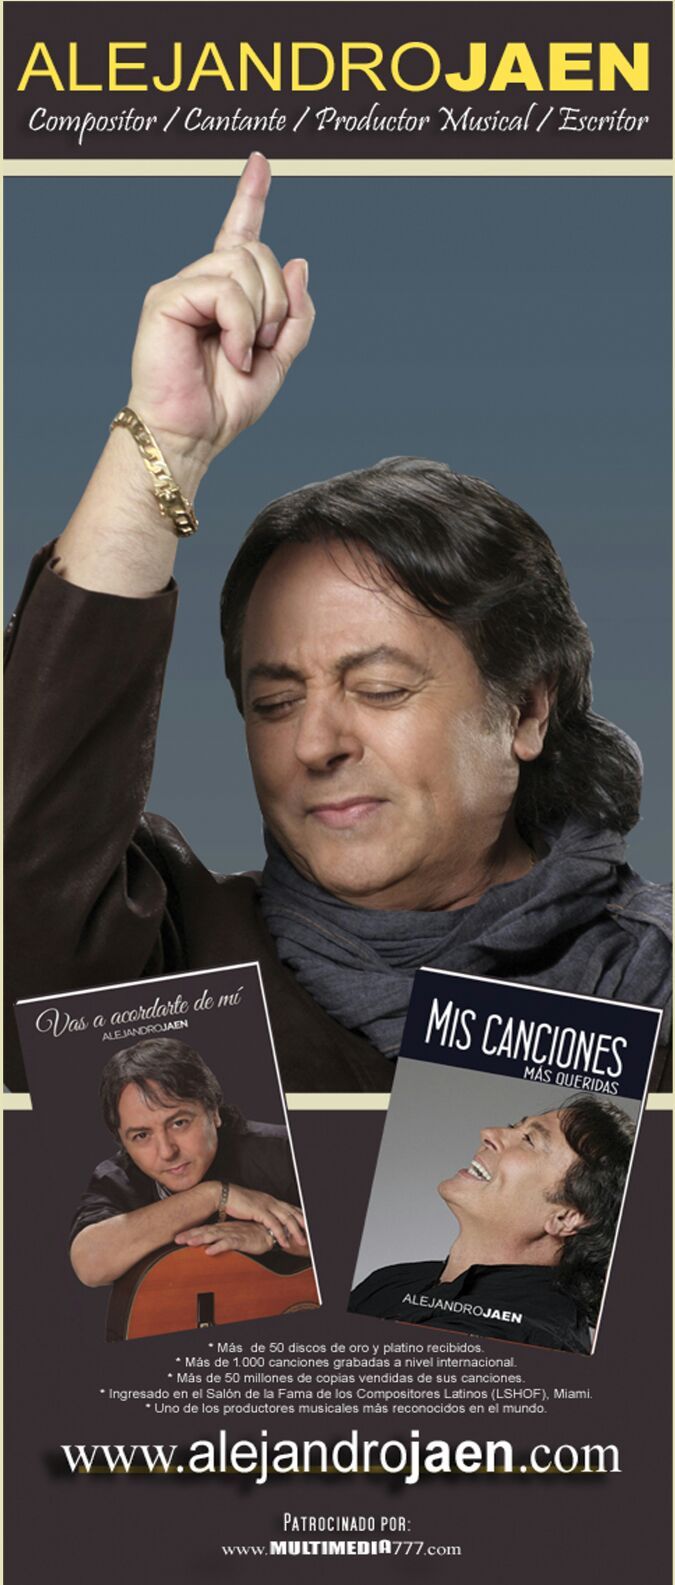 Alejandro Jaén lanzará su libro autobiográfico “Vas a acordarte de mí”